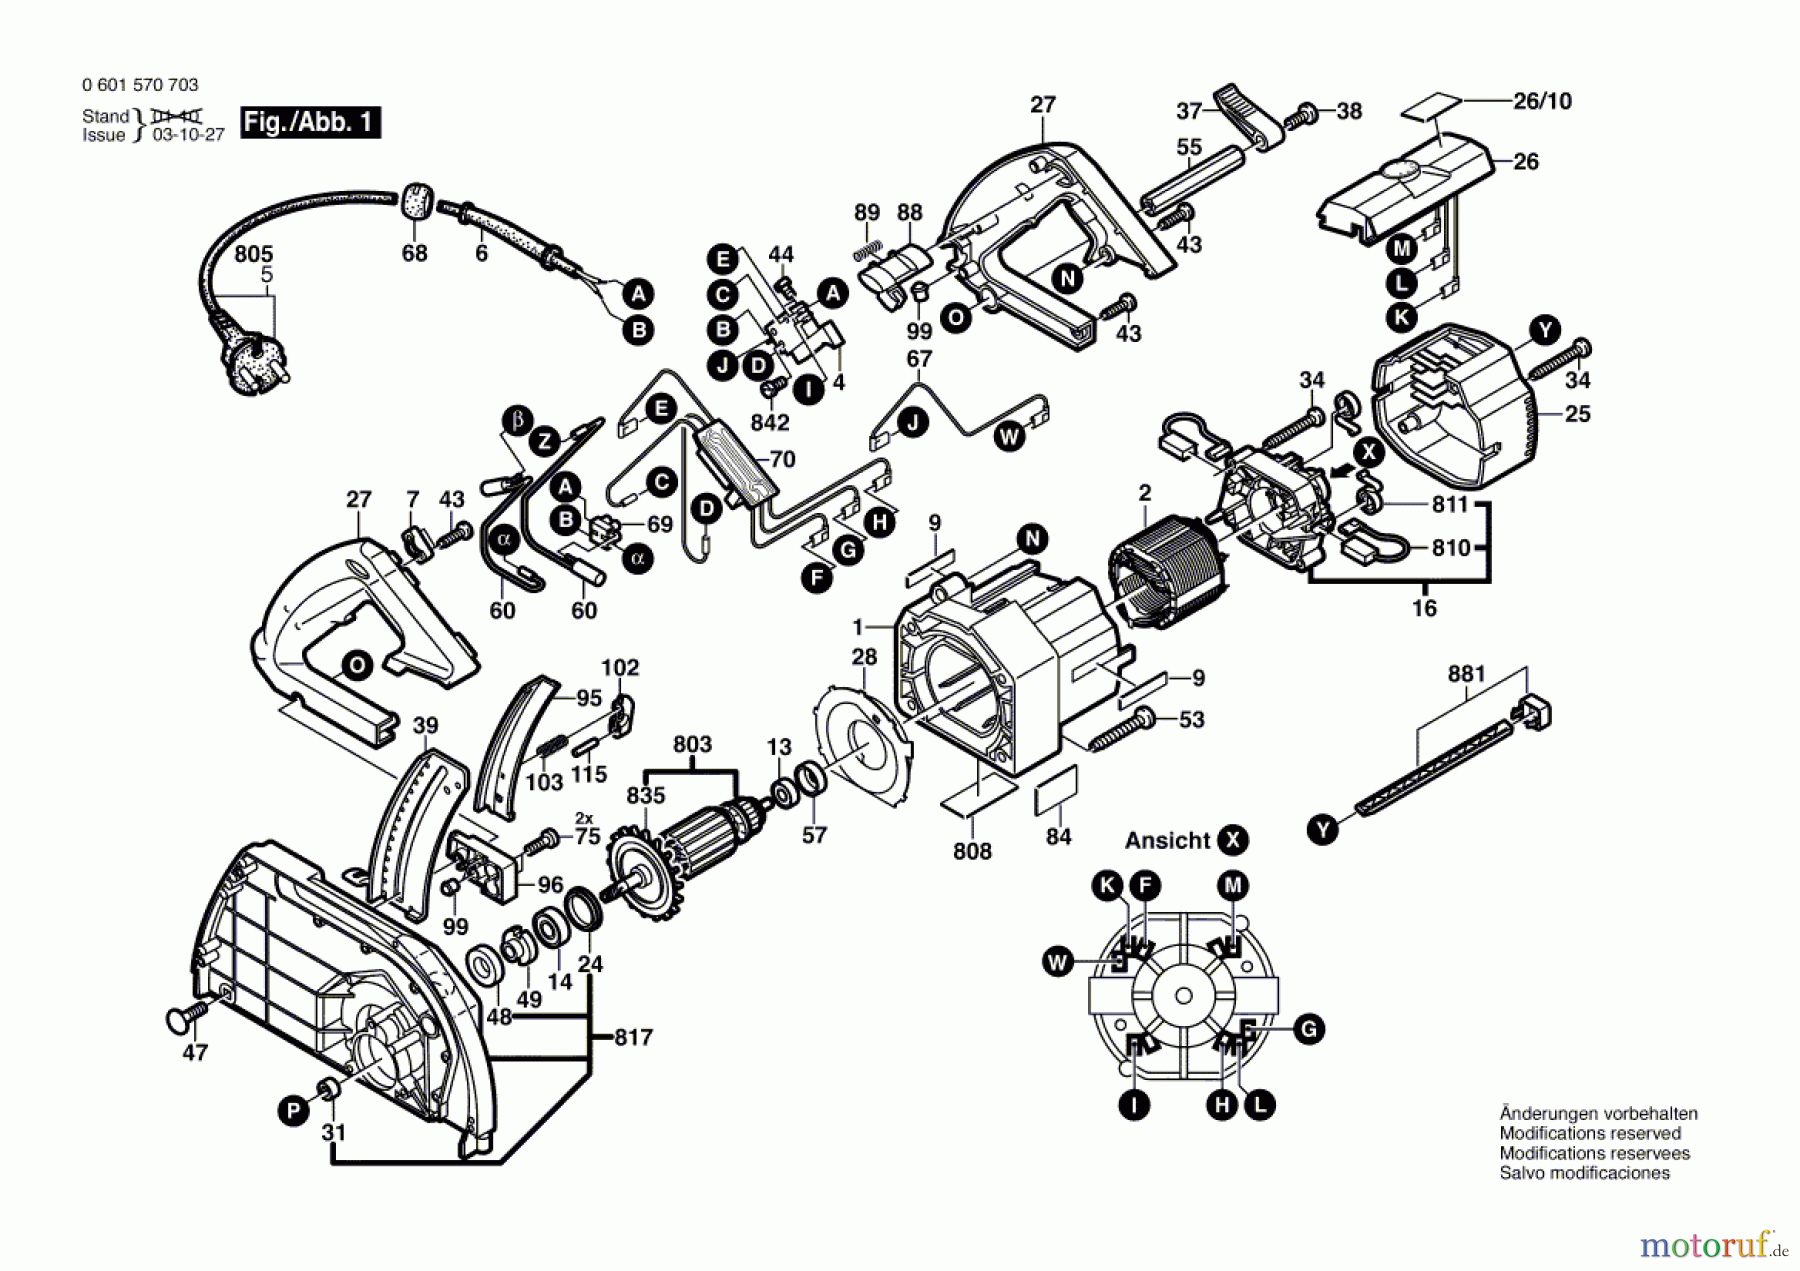  Bosch Werkzeug Handkreissäge GKS 68 BC Seite 1